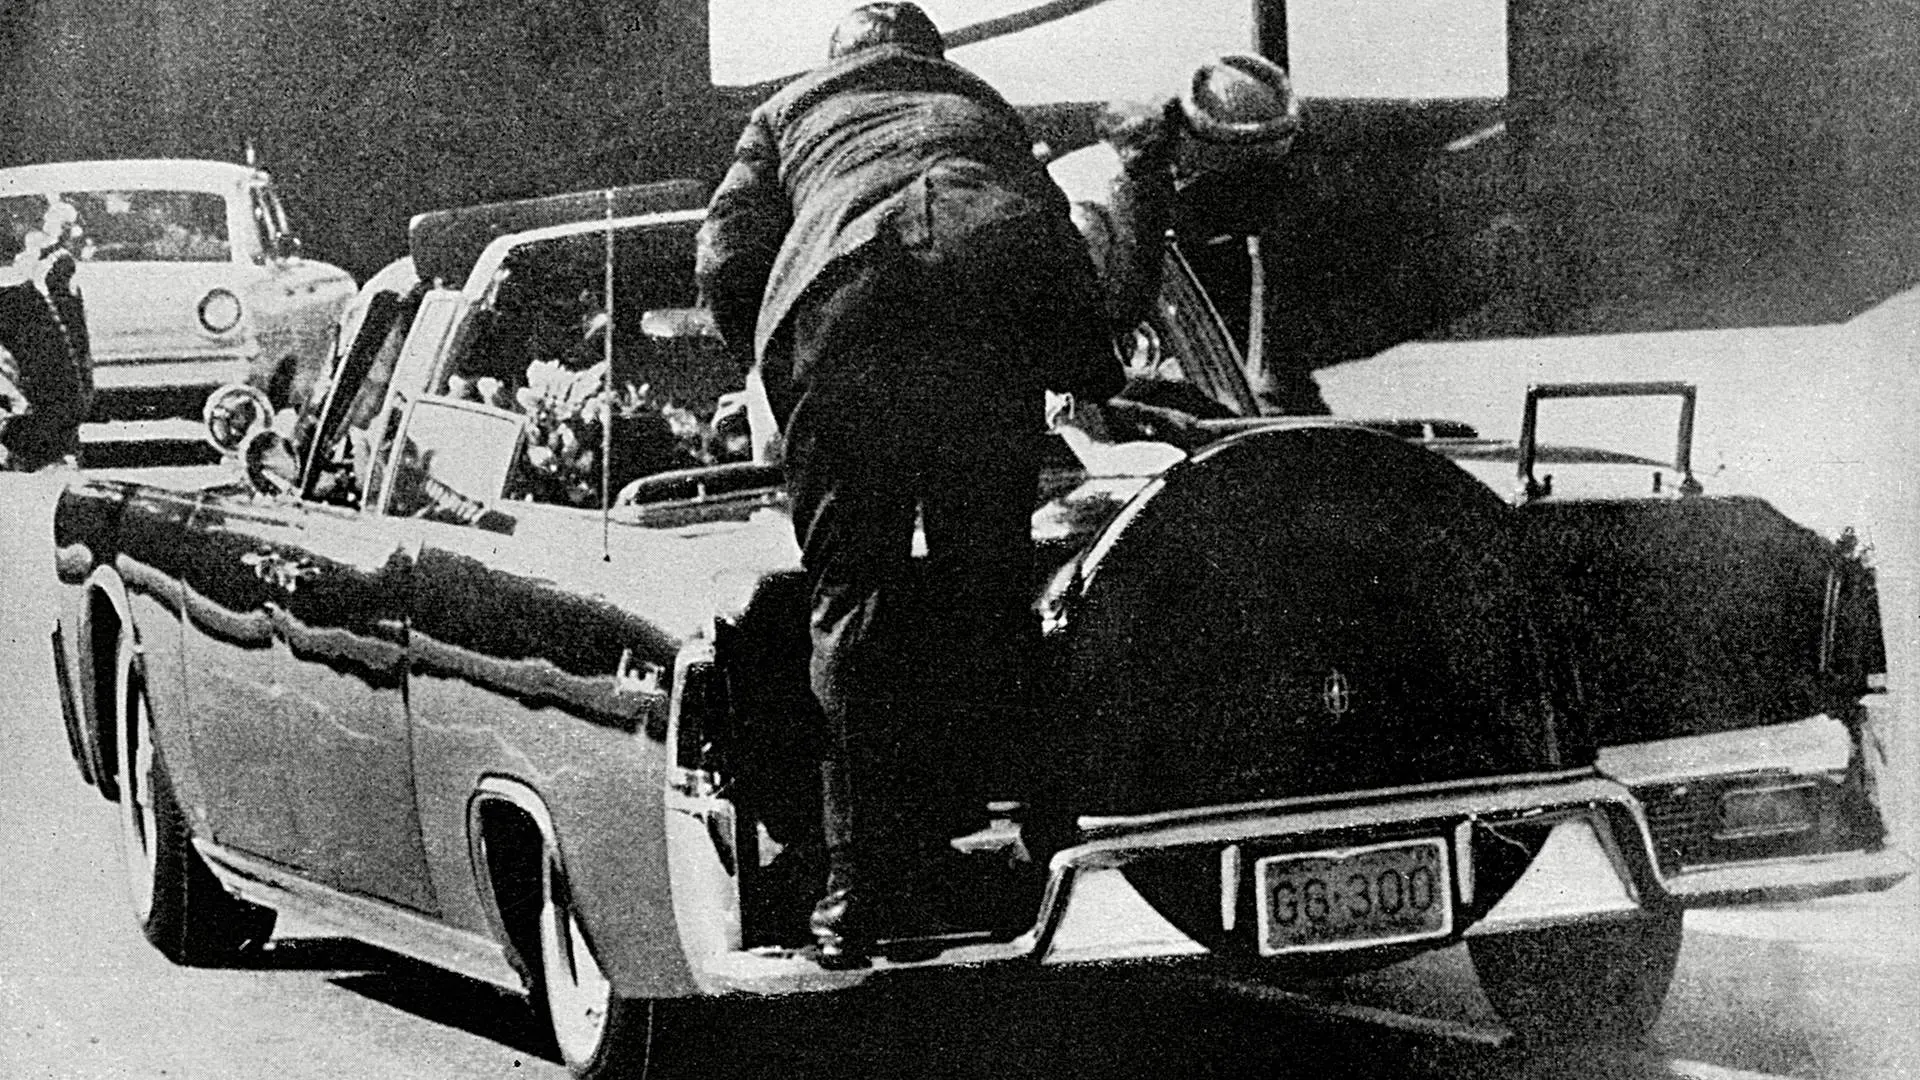 Aquí la historia del asesinato de John Kennedy y la sospechosa “bala mágica” tras 56 años del suceso